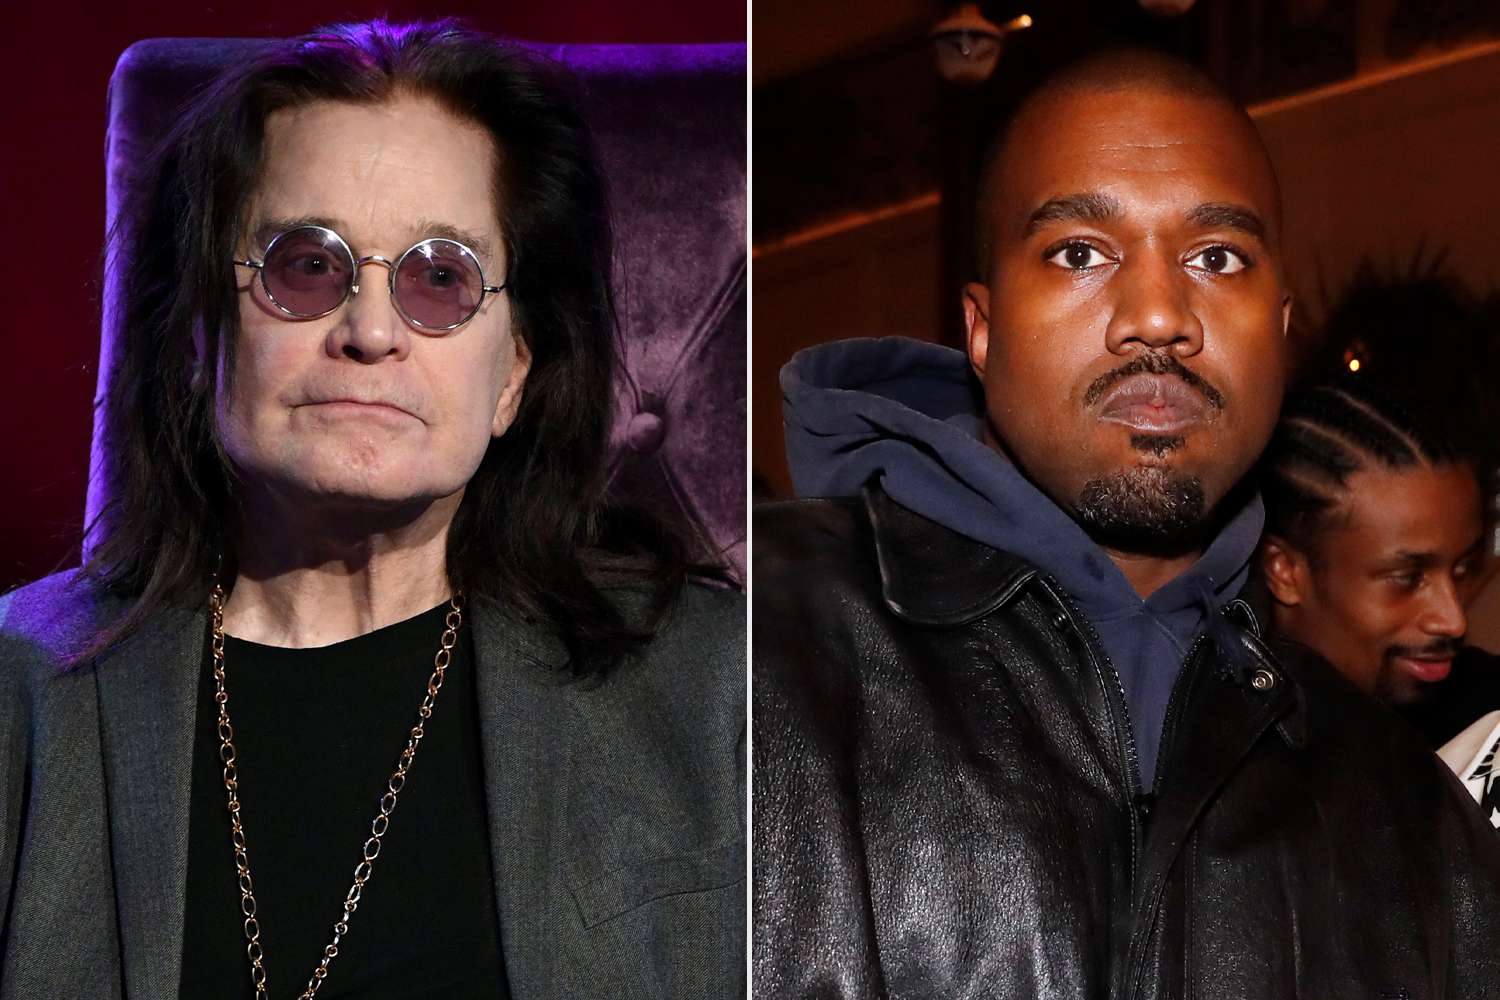 Rock Legend Ozzy Osbourne's War with Kanye West over 'War Pigs' Sampling Scandal